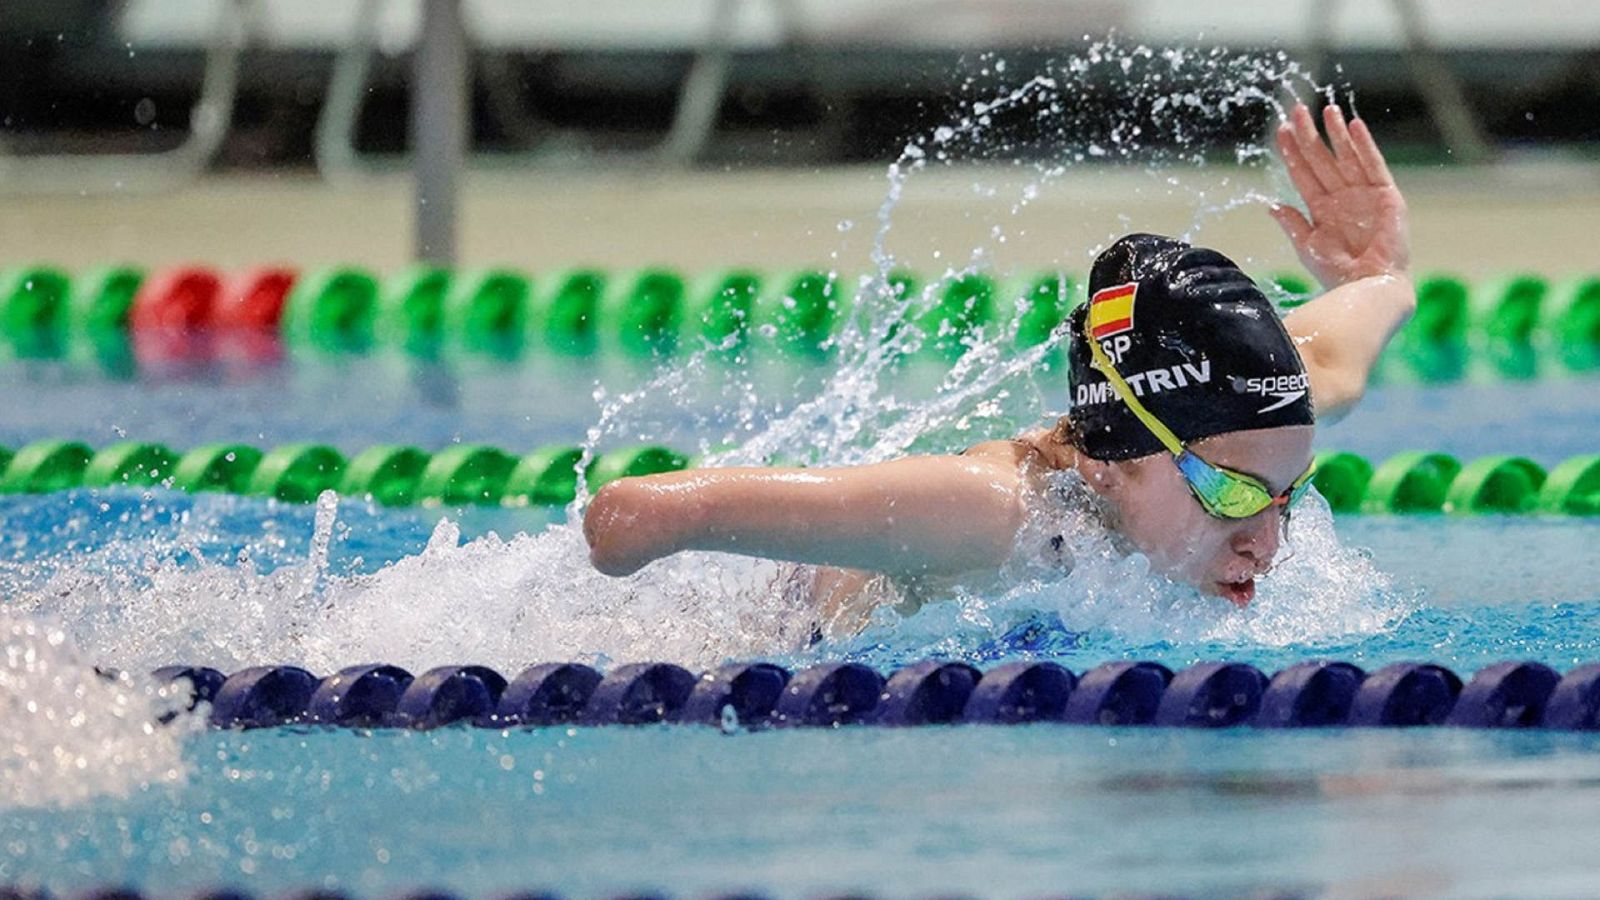 La almeriense Tasy, 13 años, brilla en la natación paralímpica